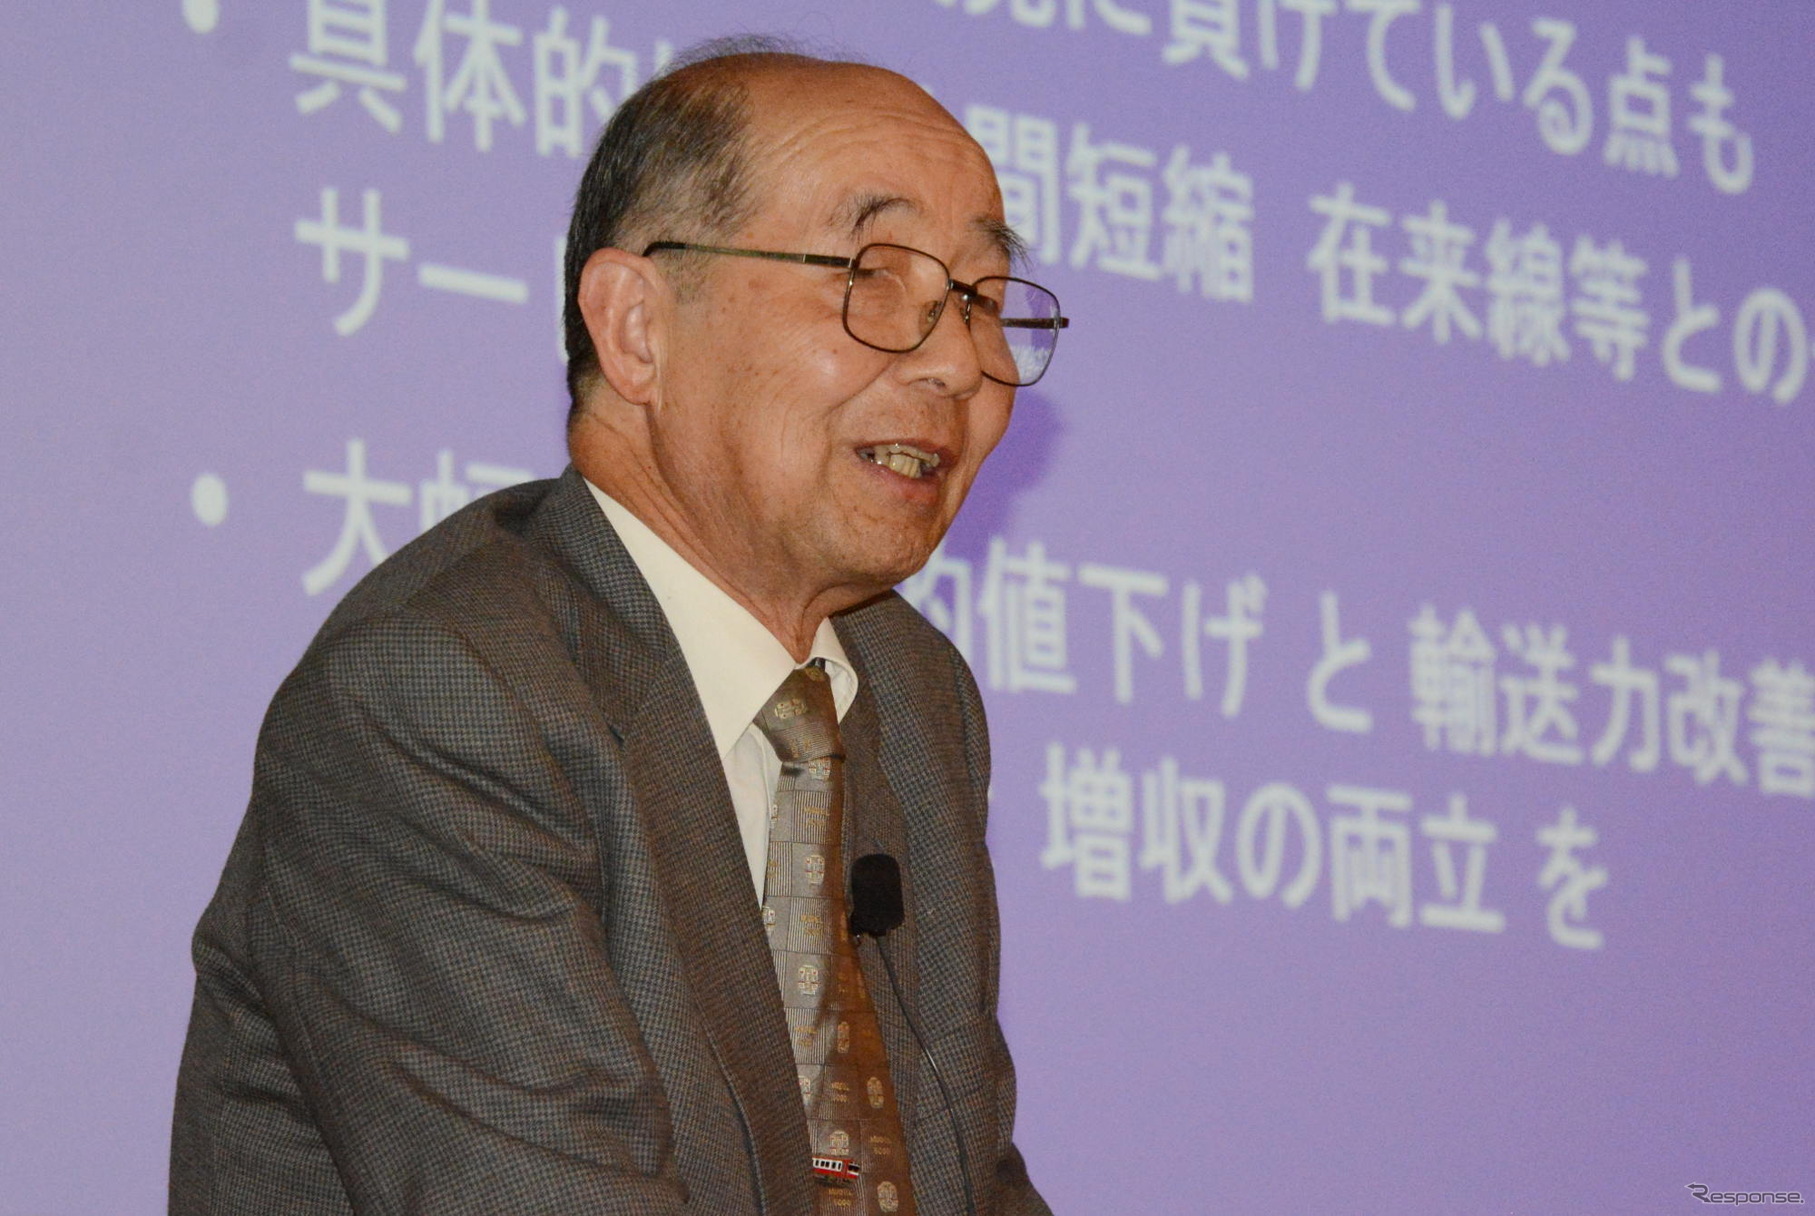 曽根悟 特任教授。工学博士で、東京大学の名誉教授でもある。